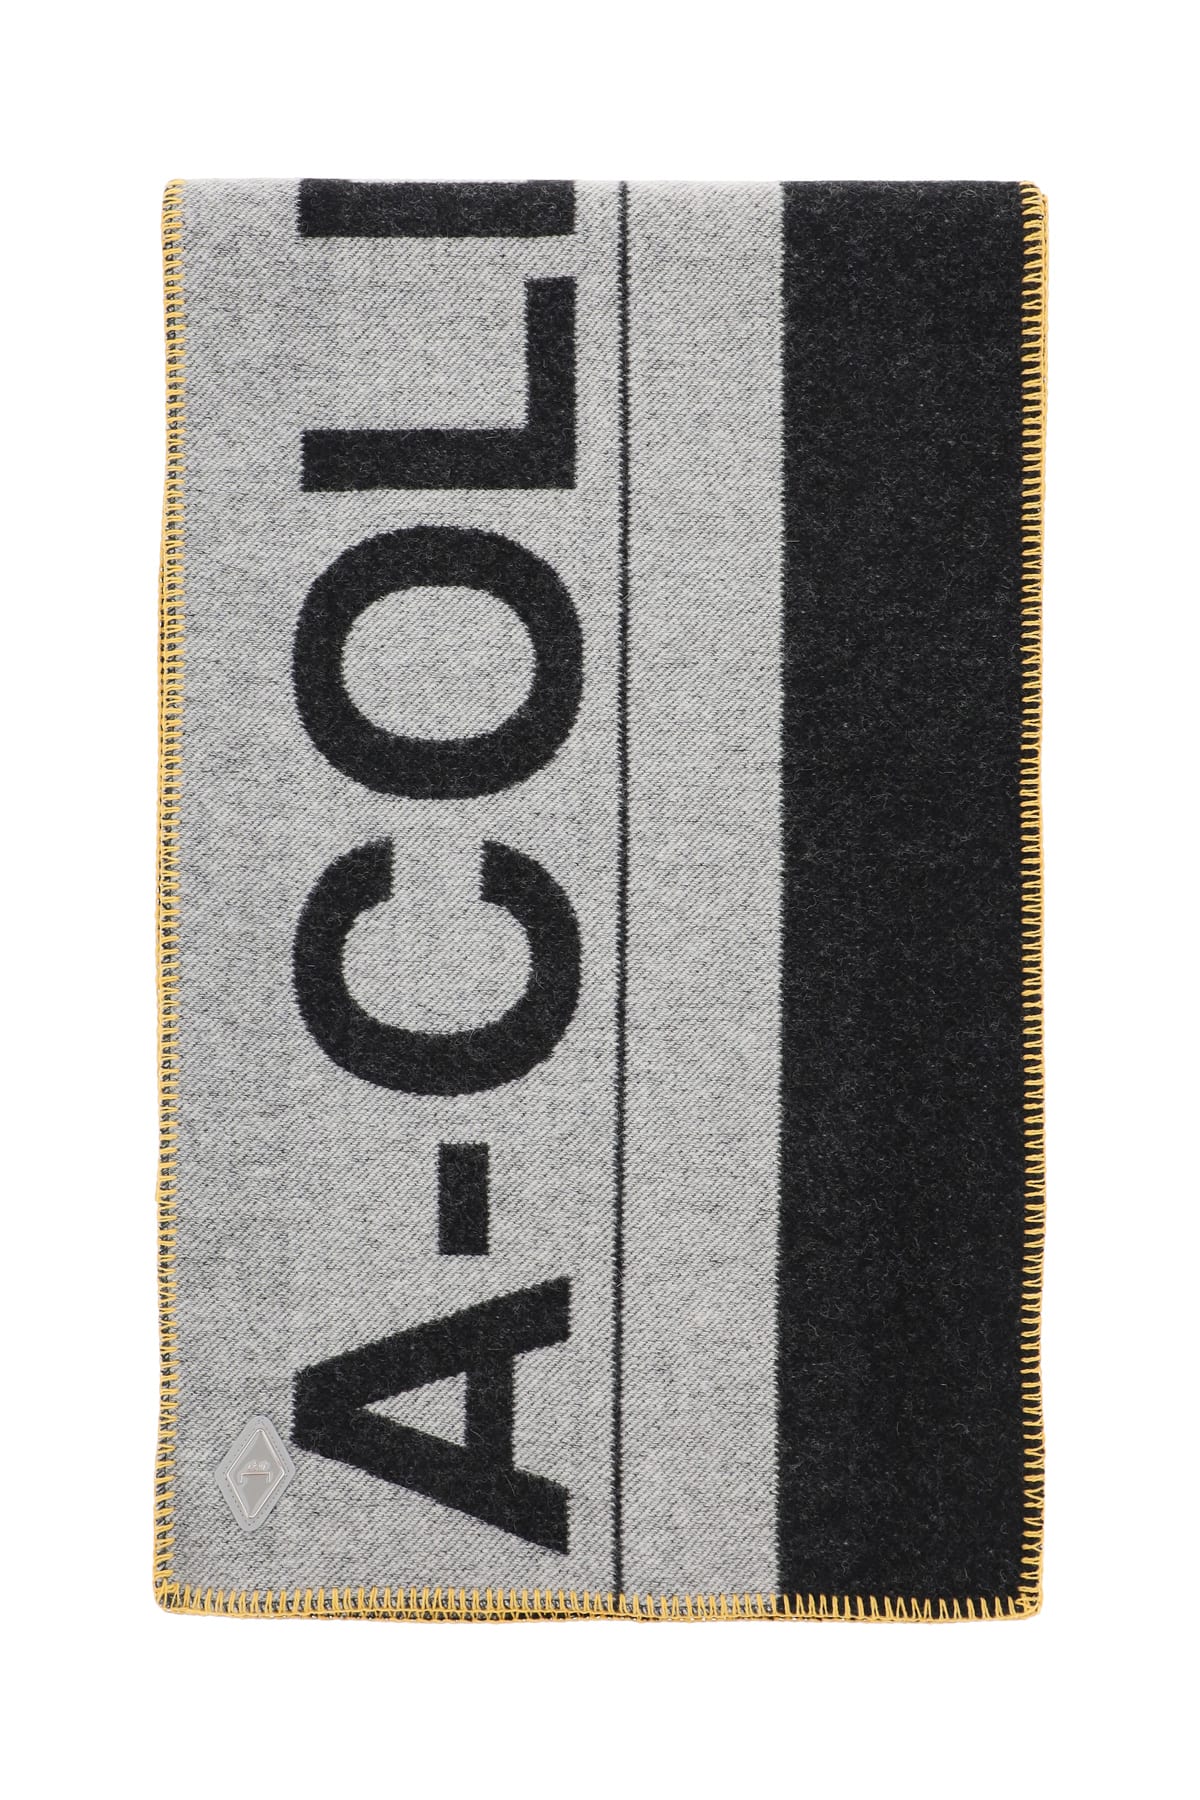 A-COLD-WALL Maxi Logo Scarf